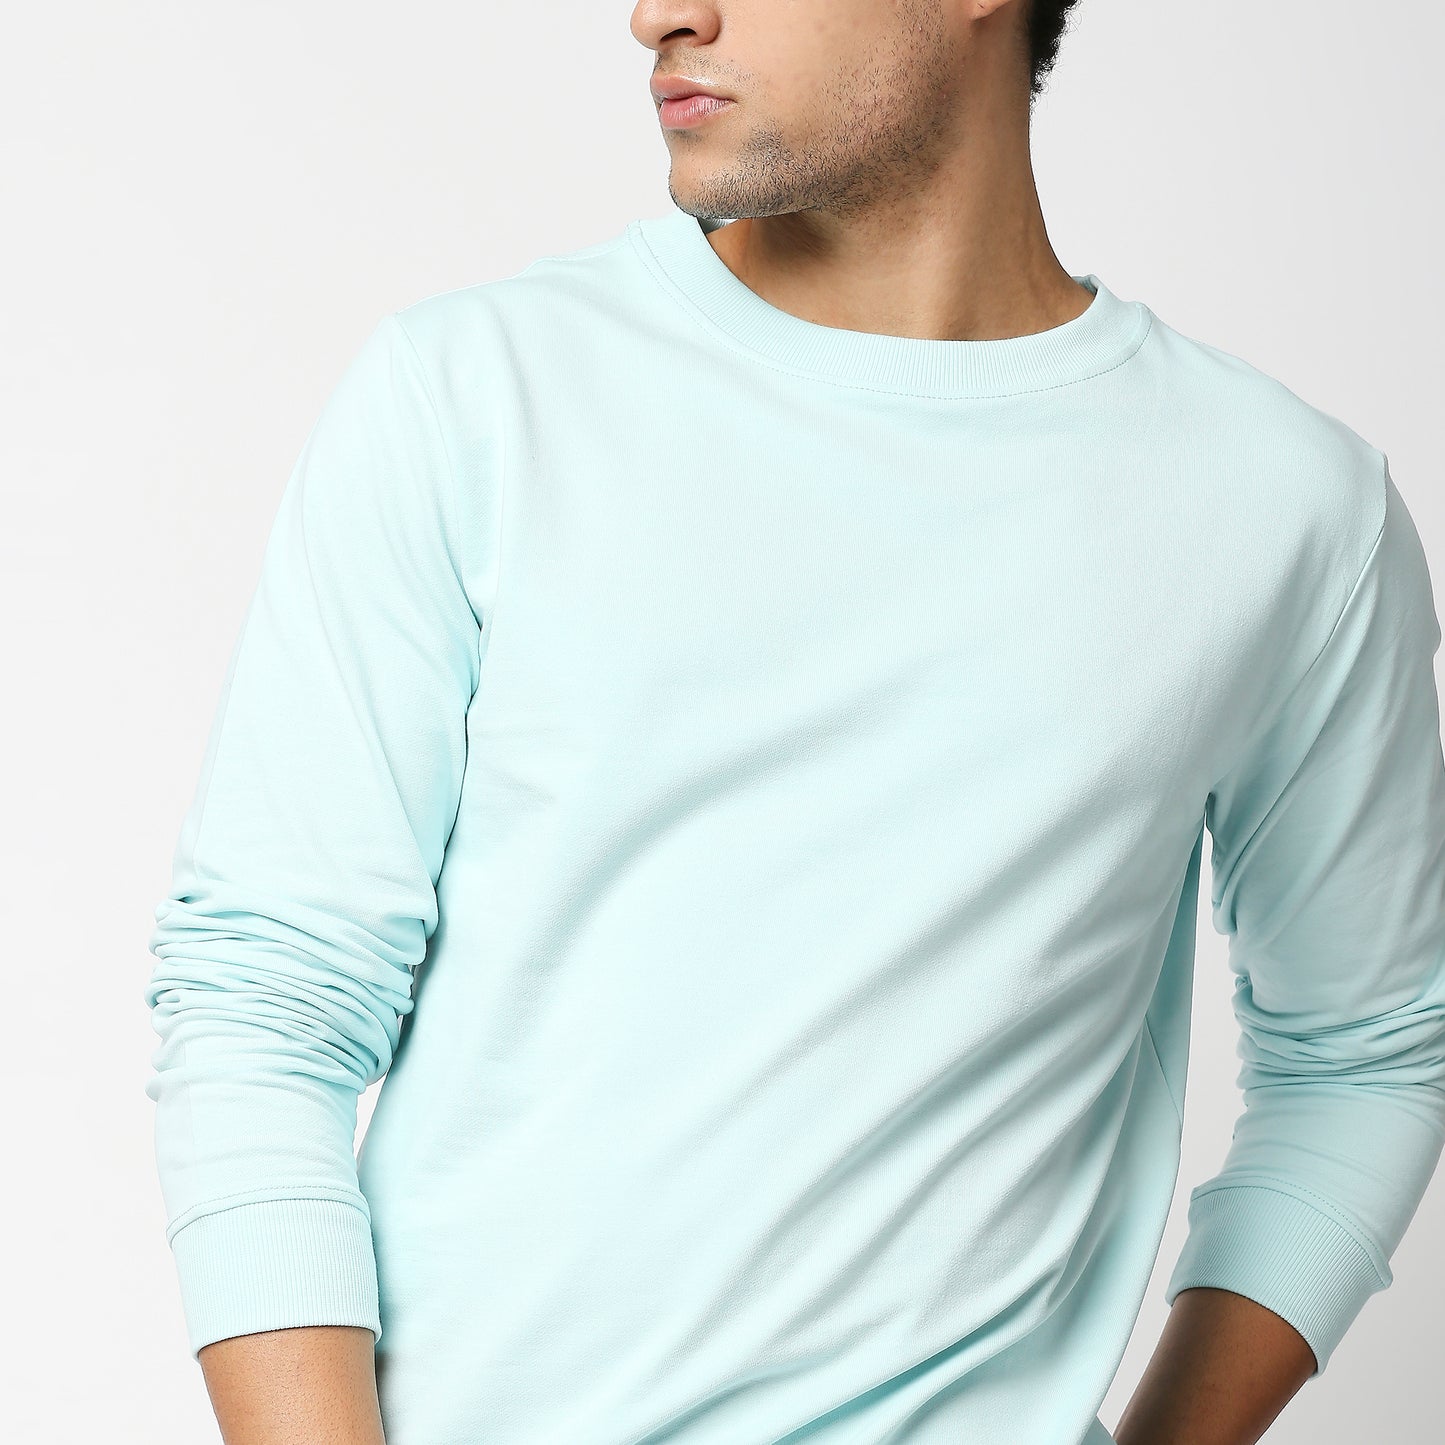 Fostino Vintage Sky Blue Plain Full Sleeves Tshirt - Fostino Shirts & Tops